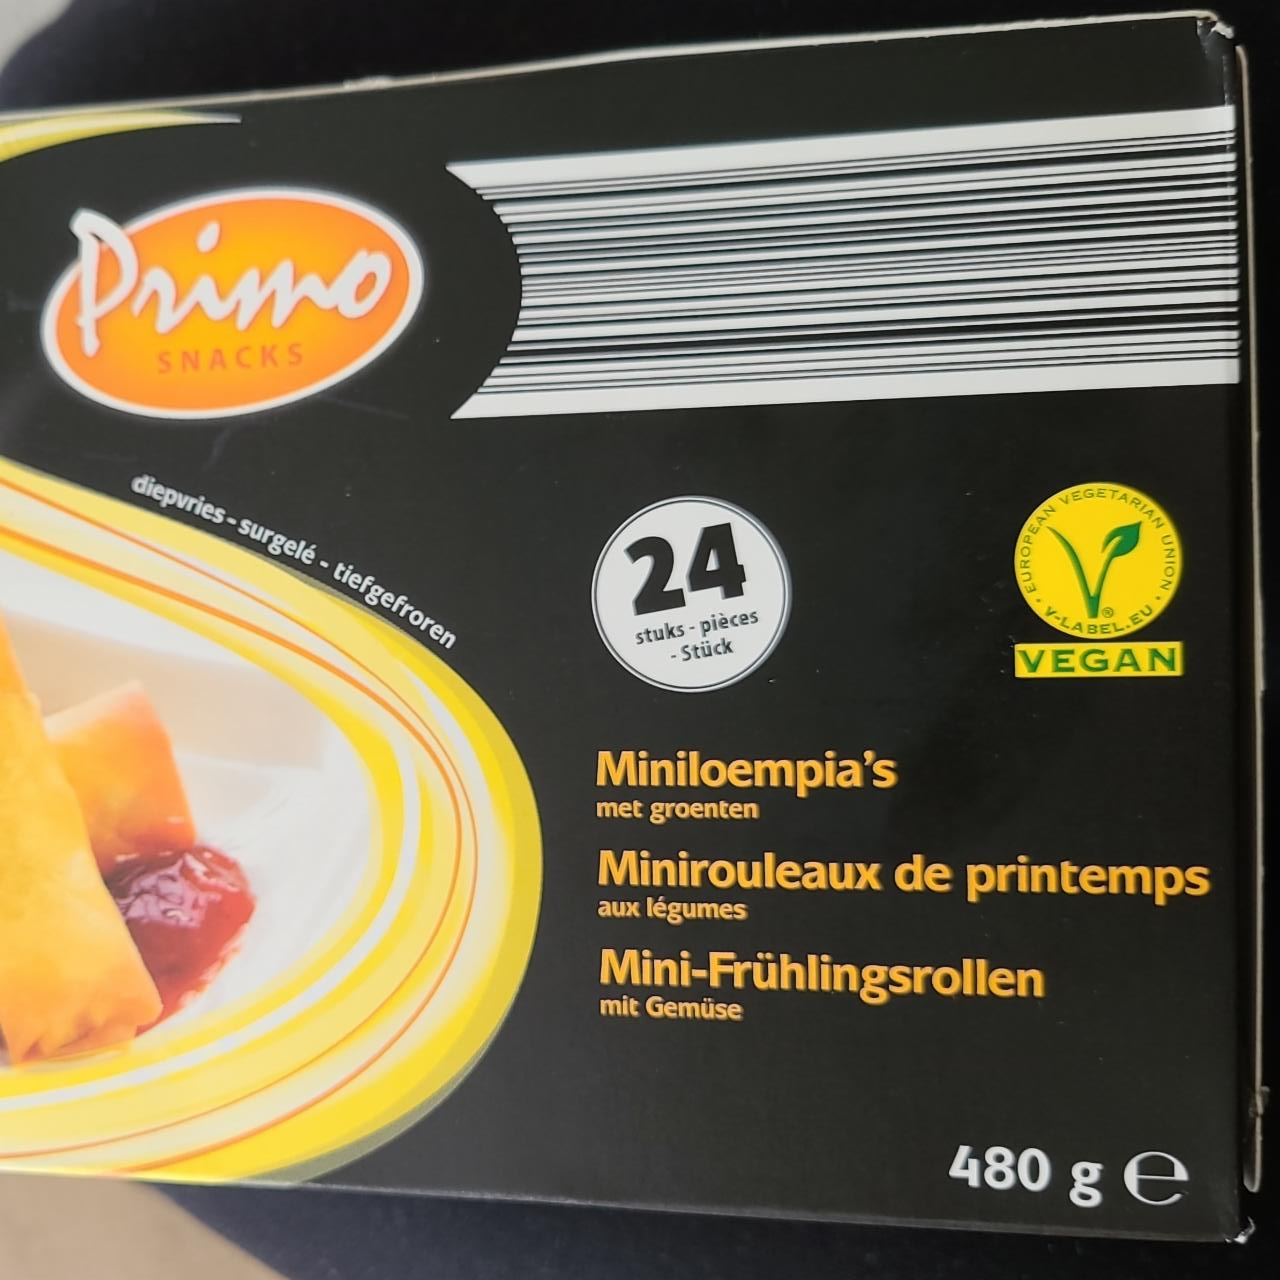 Fotografie - Miniloempia's met groenten Primo snacks